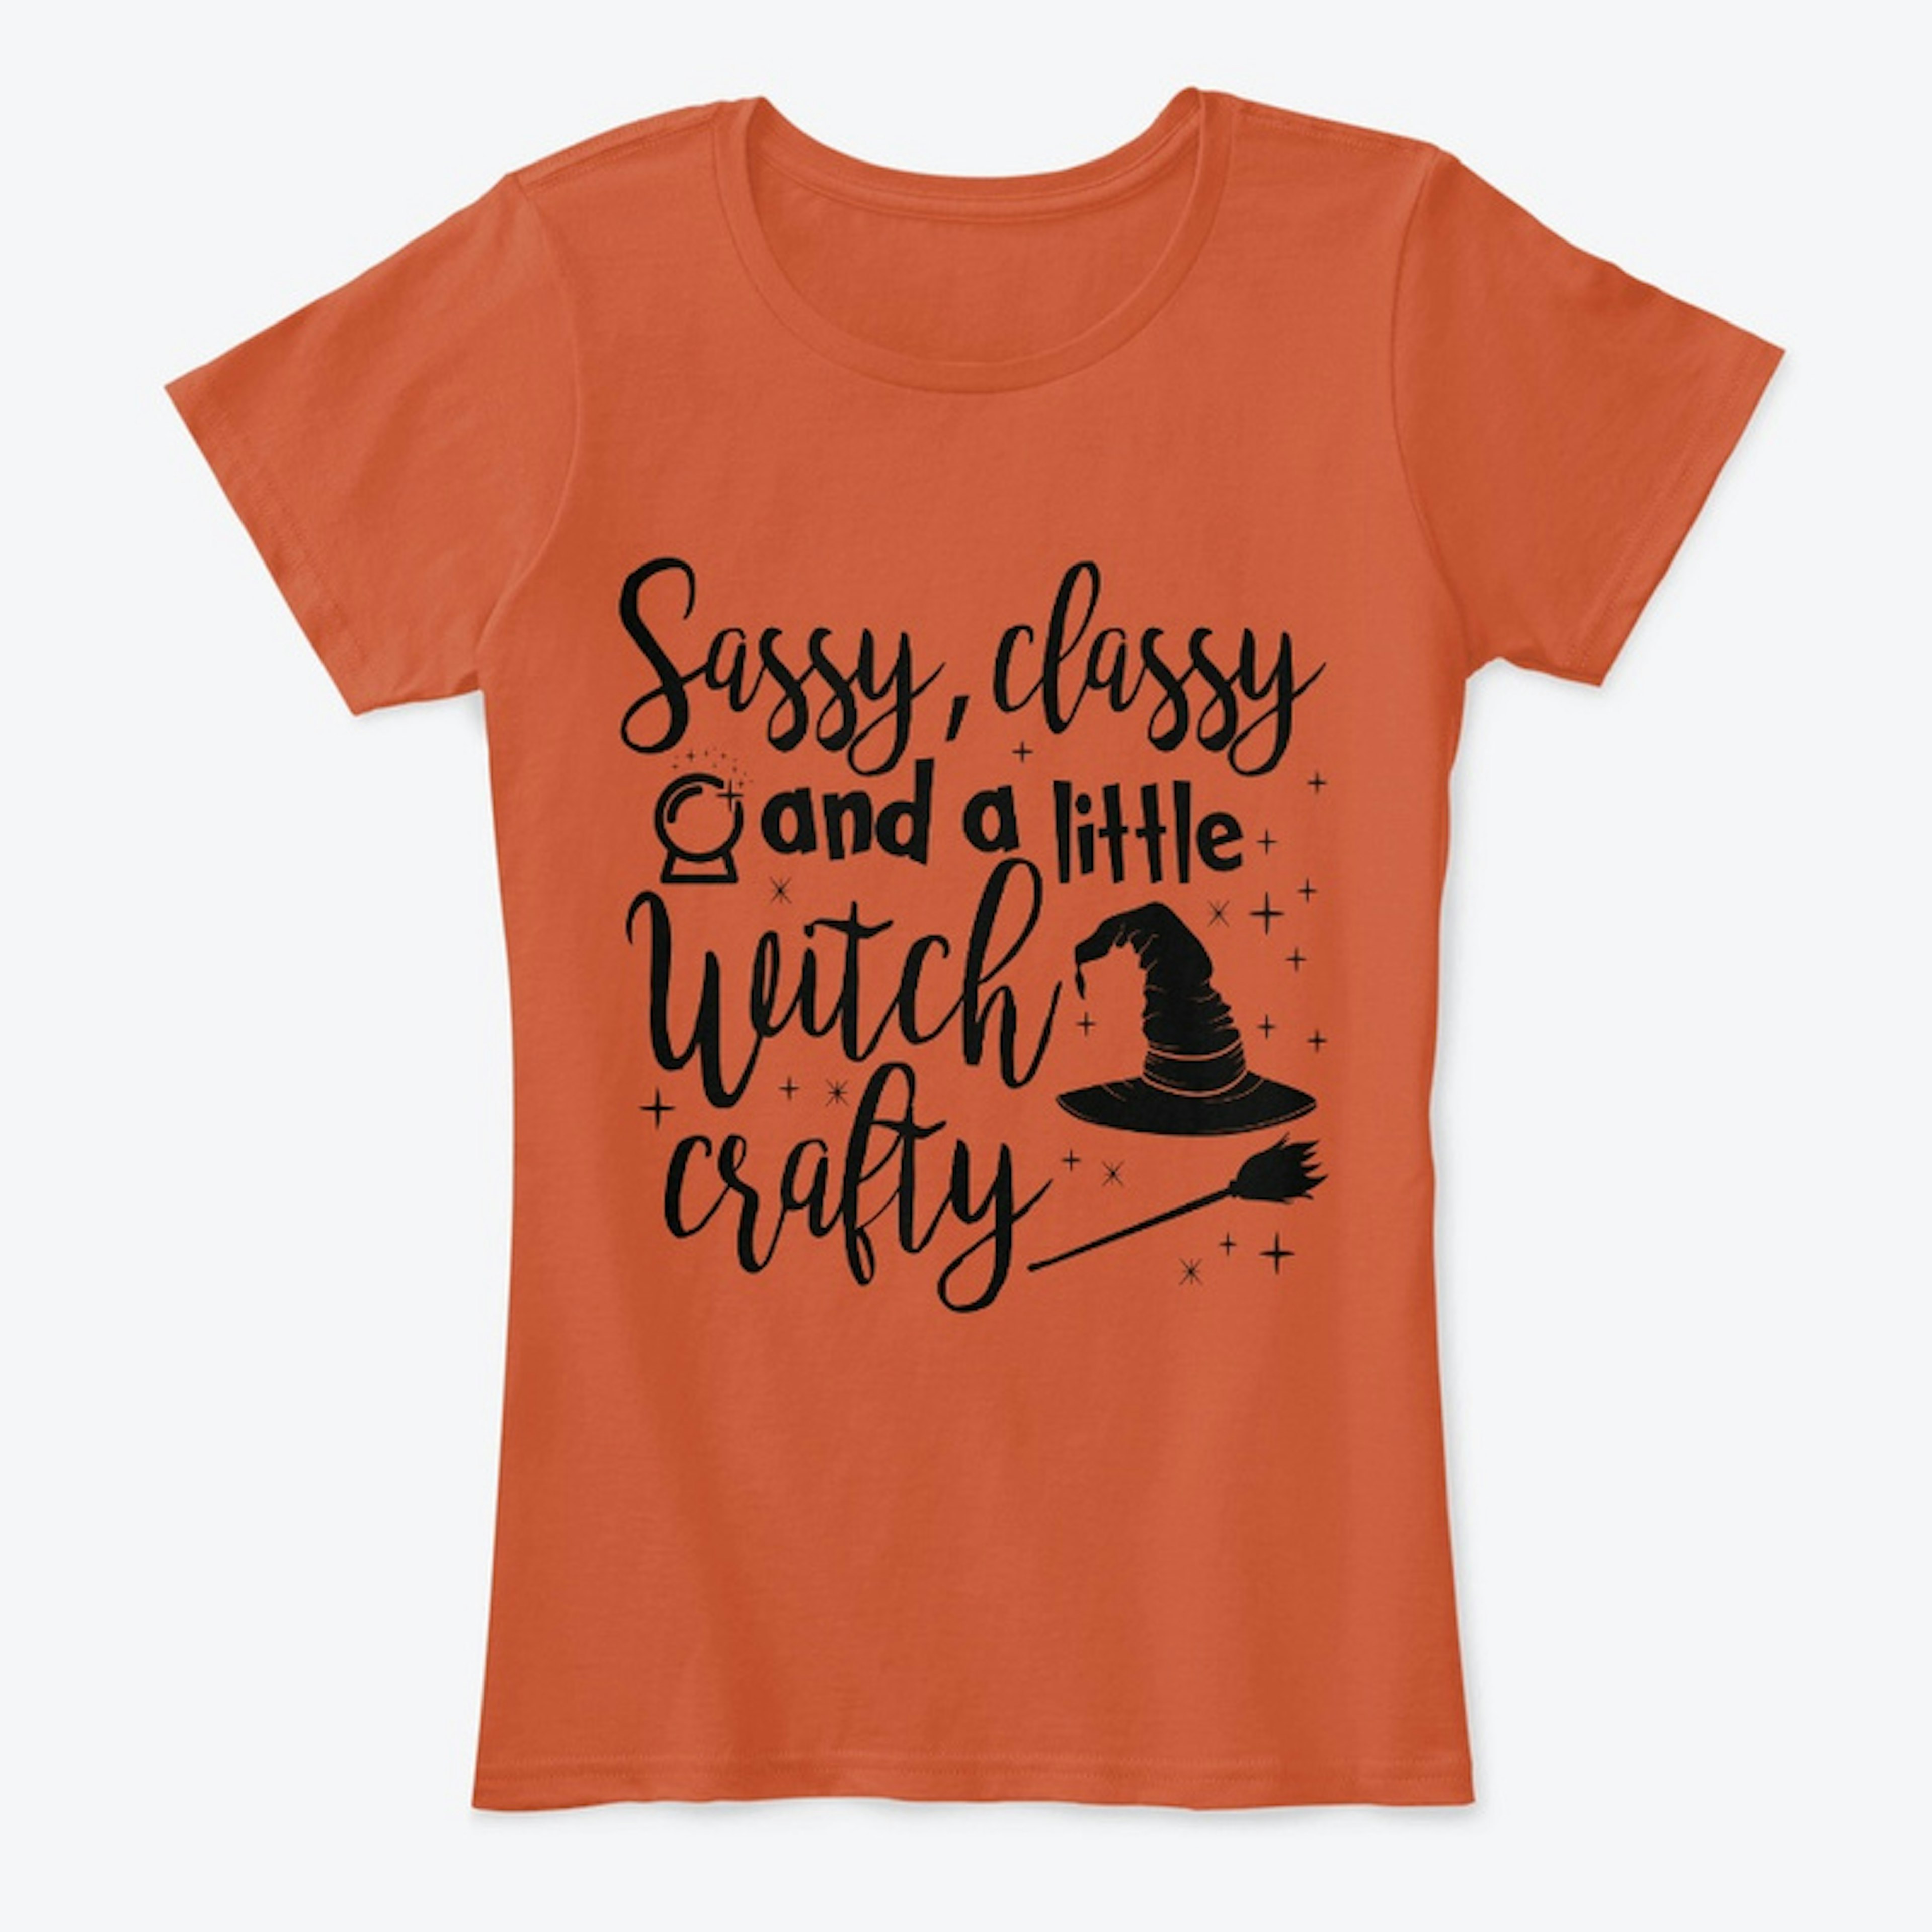 Sassy classy Witch